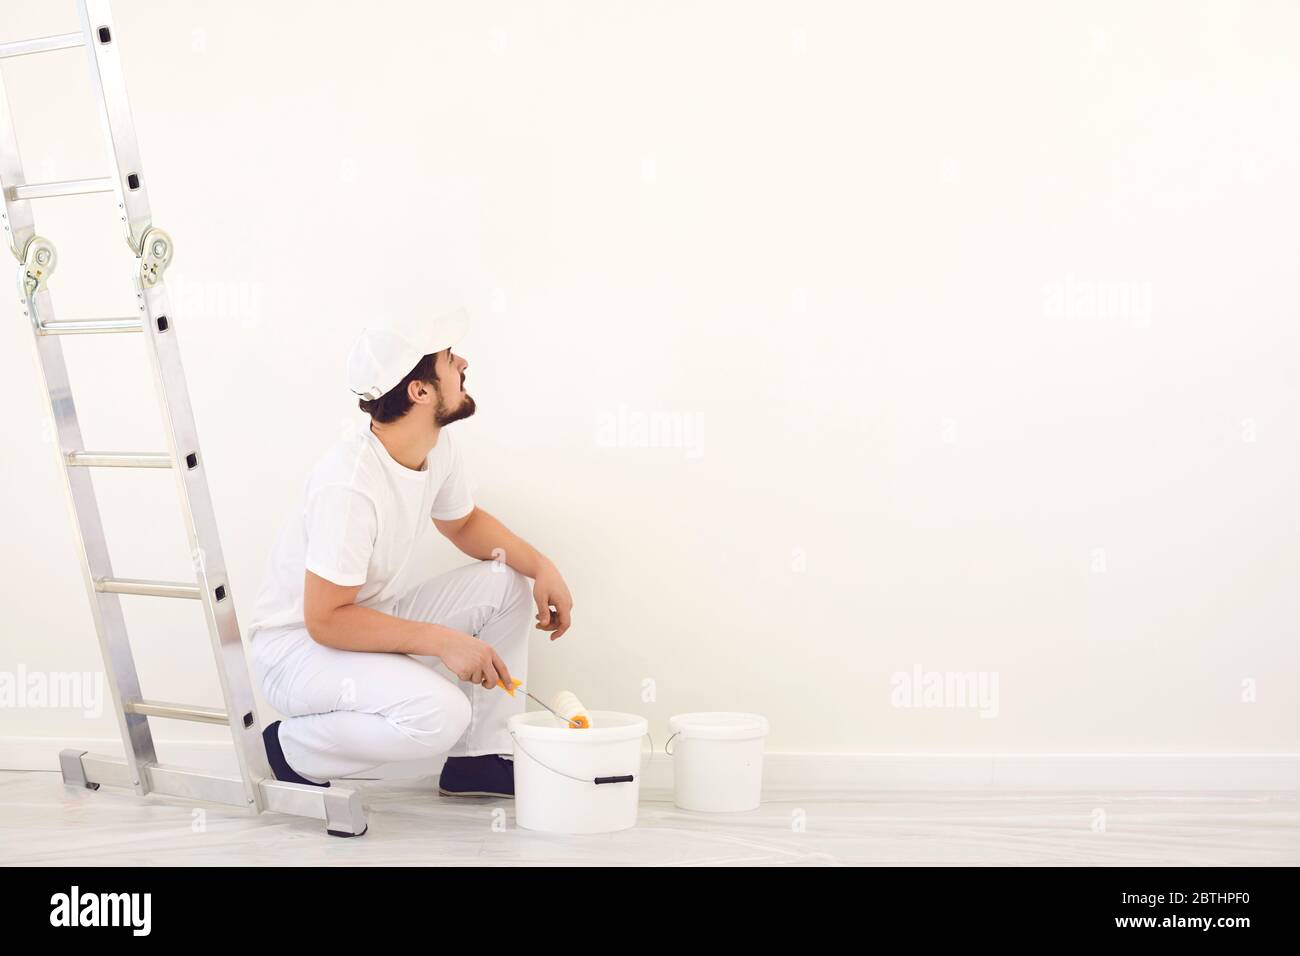 Hausmaler in weißer Uniform auf weißem Hintergrund für die Malerei im Raum. Stockfoto